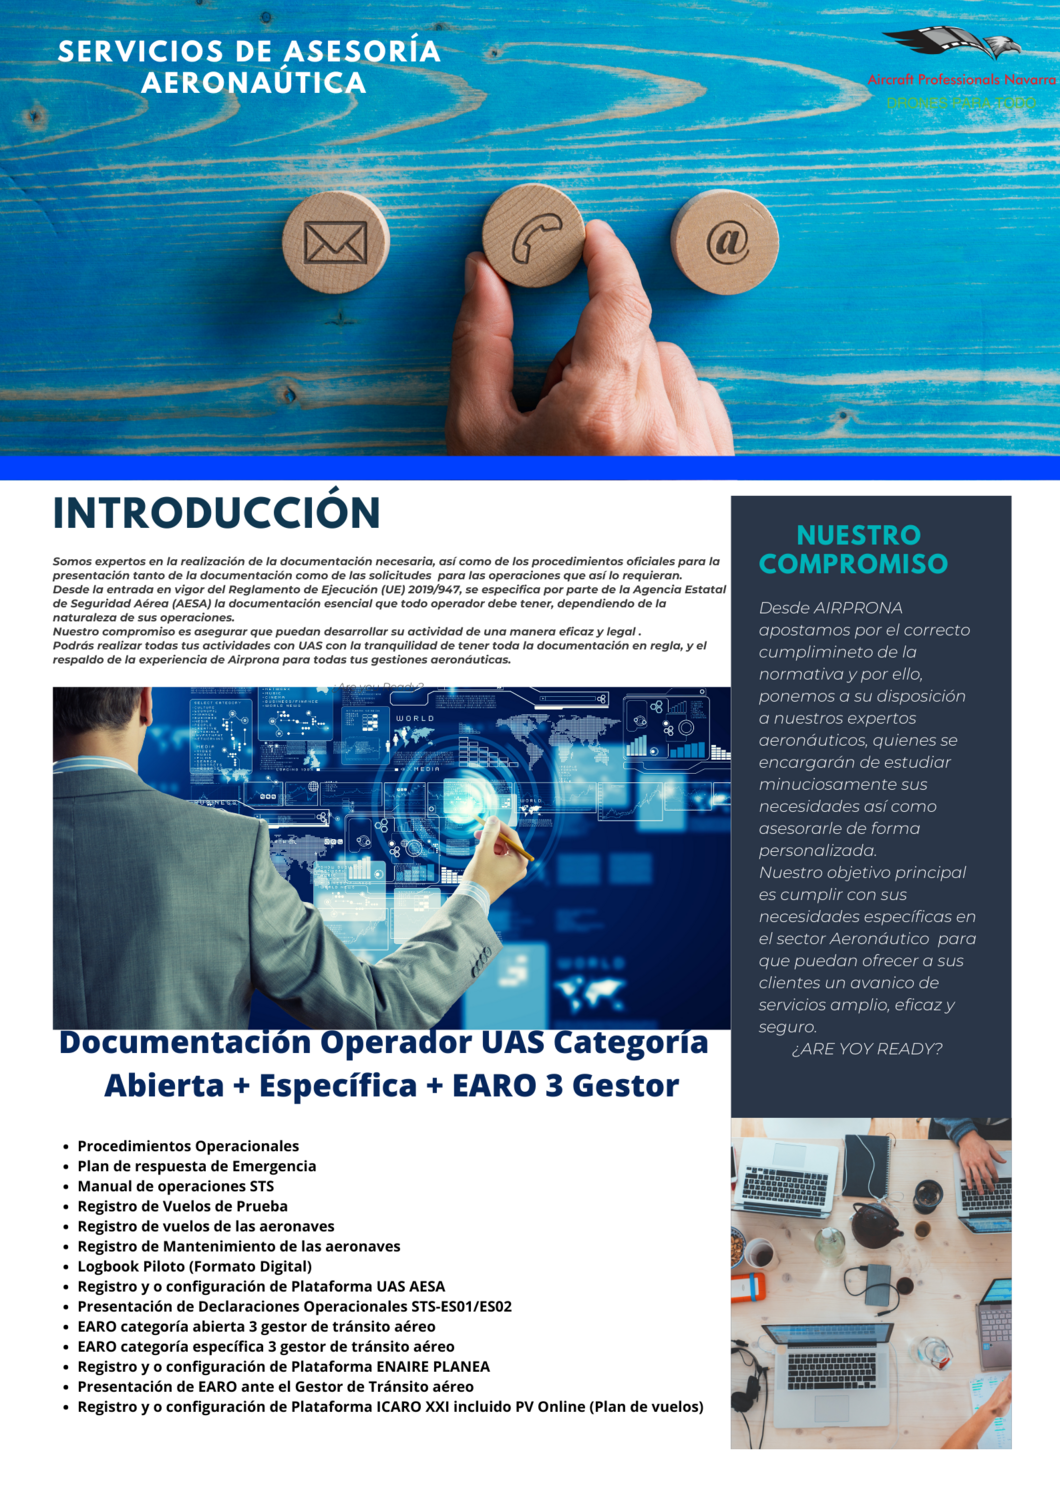 "Documentación Operador UAS Categoría
Abierta + Específica + EARO 3 Gestor"